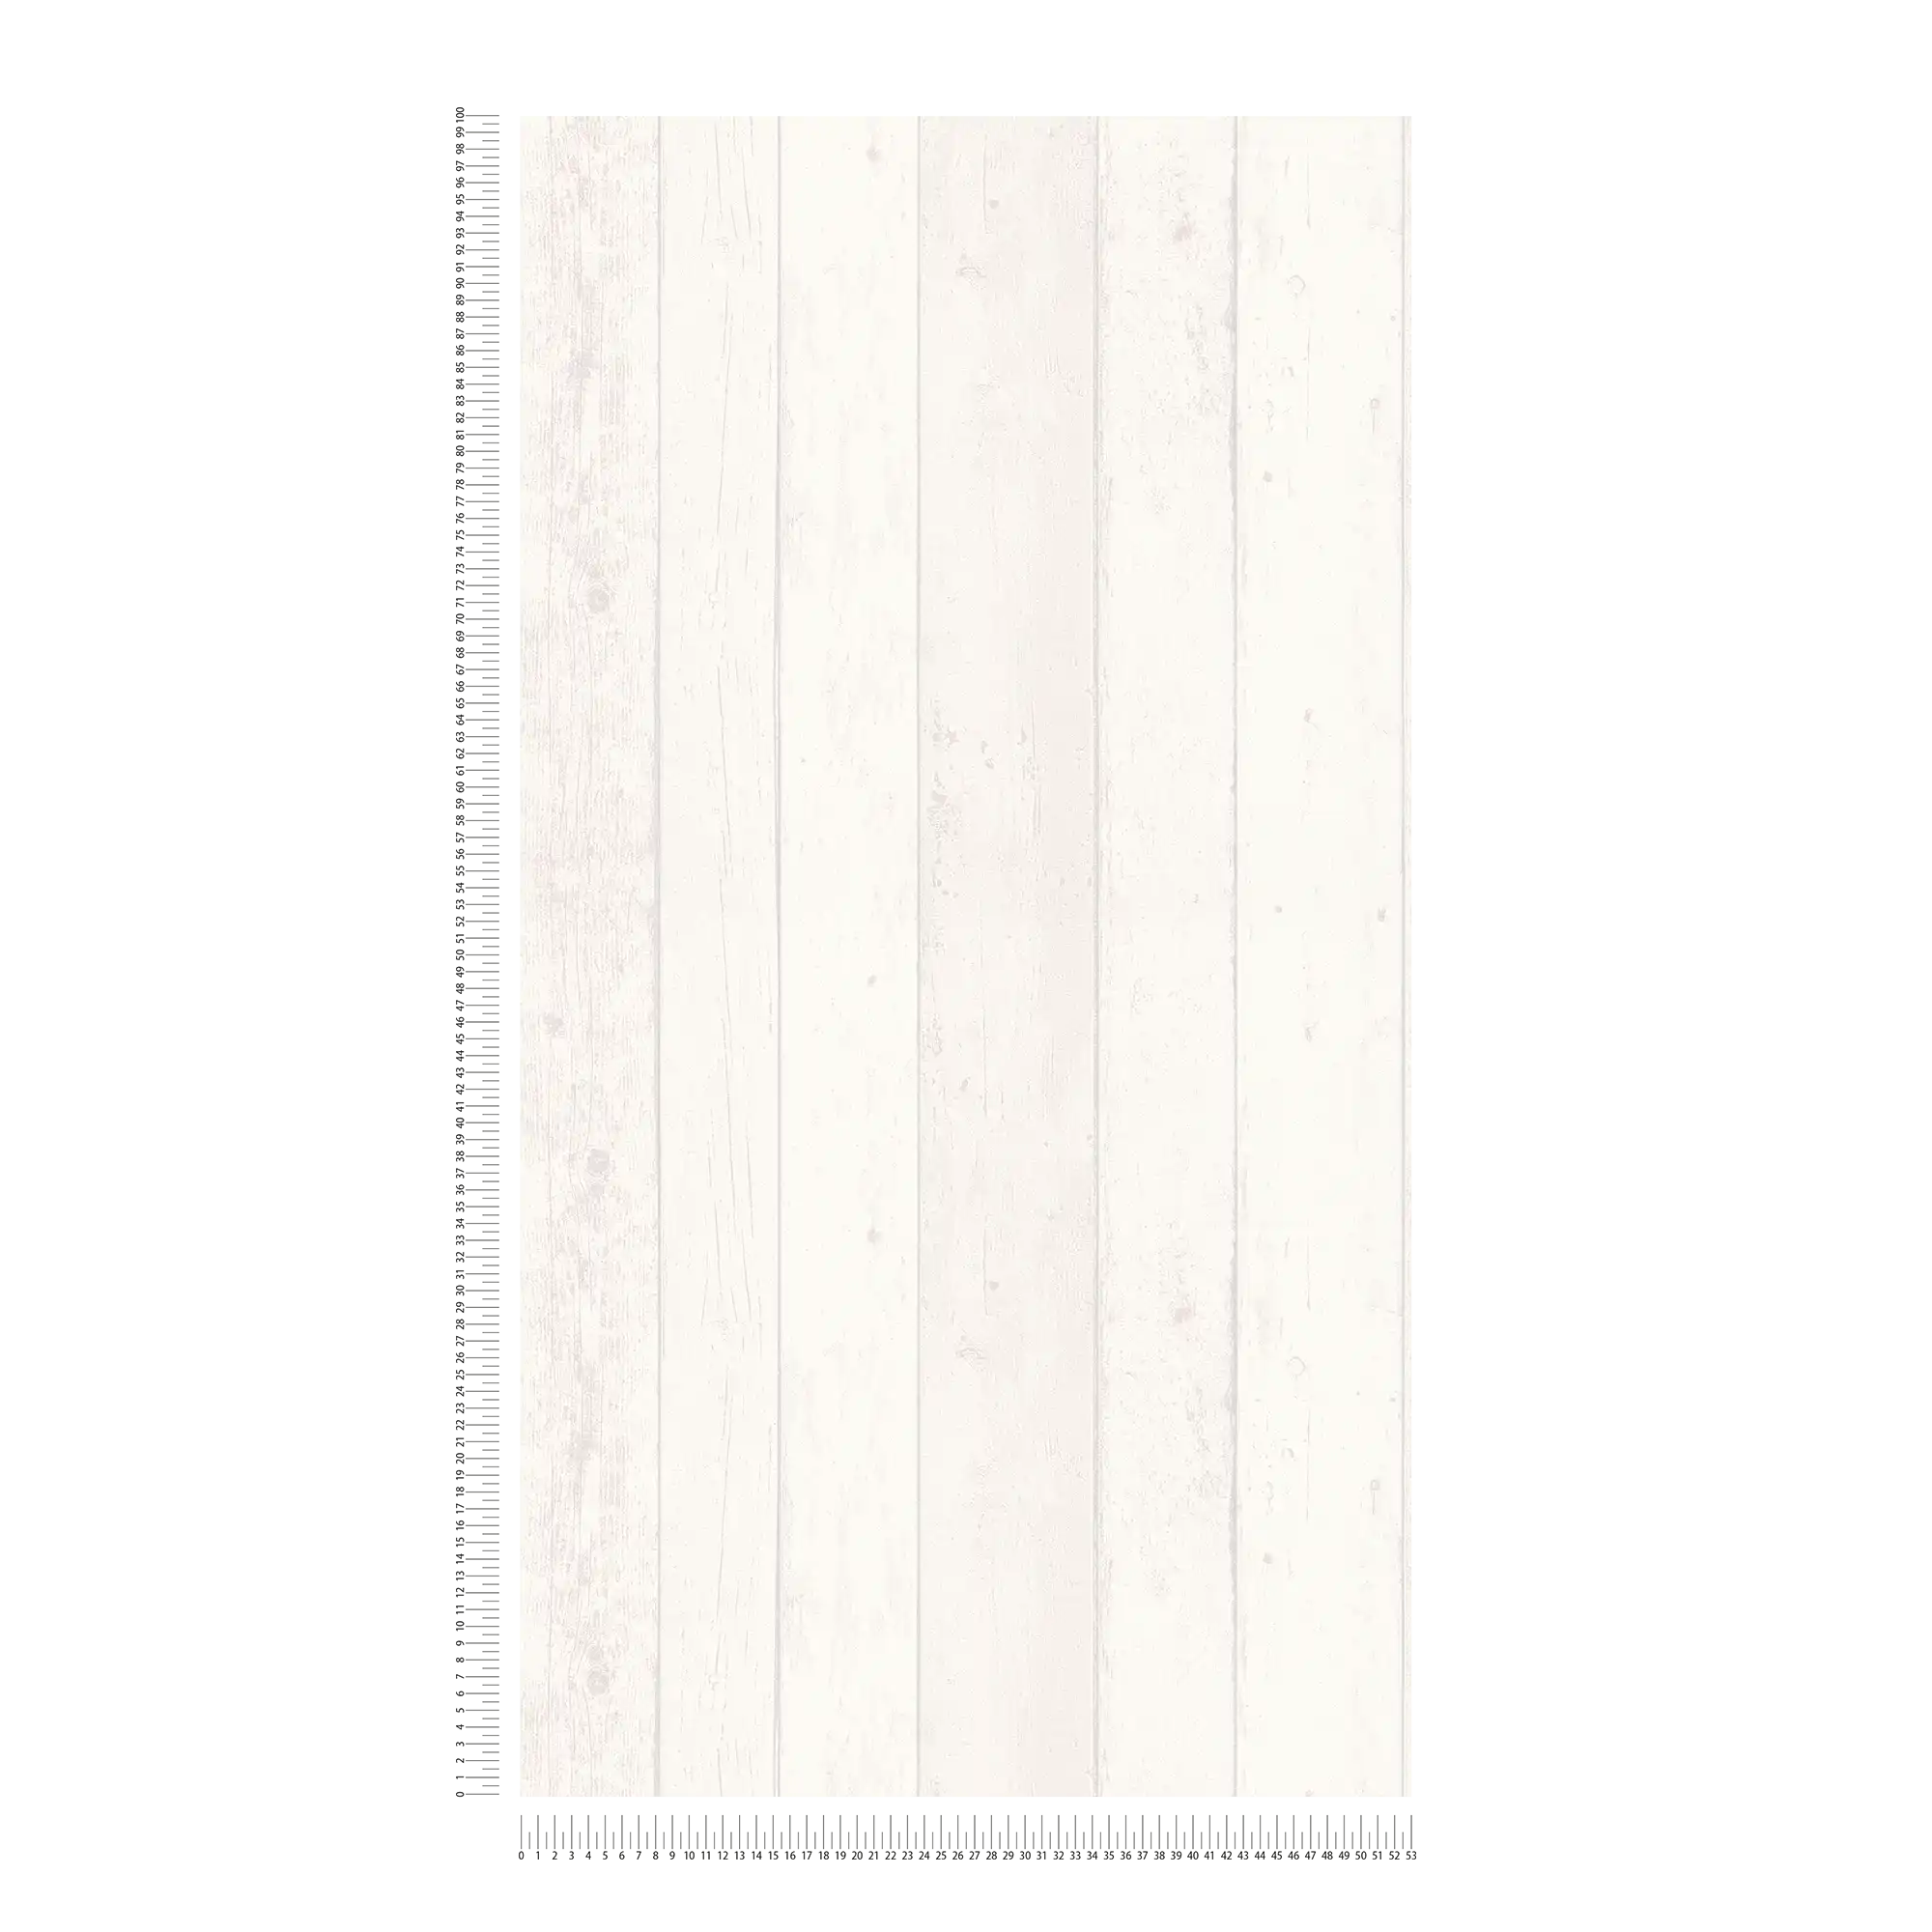             Papier peint imitation bois avec veinures style shabby chic - blanc, gris
        